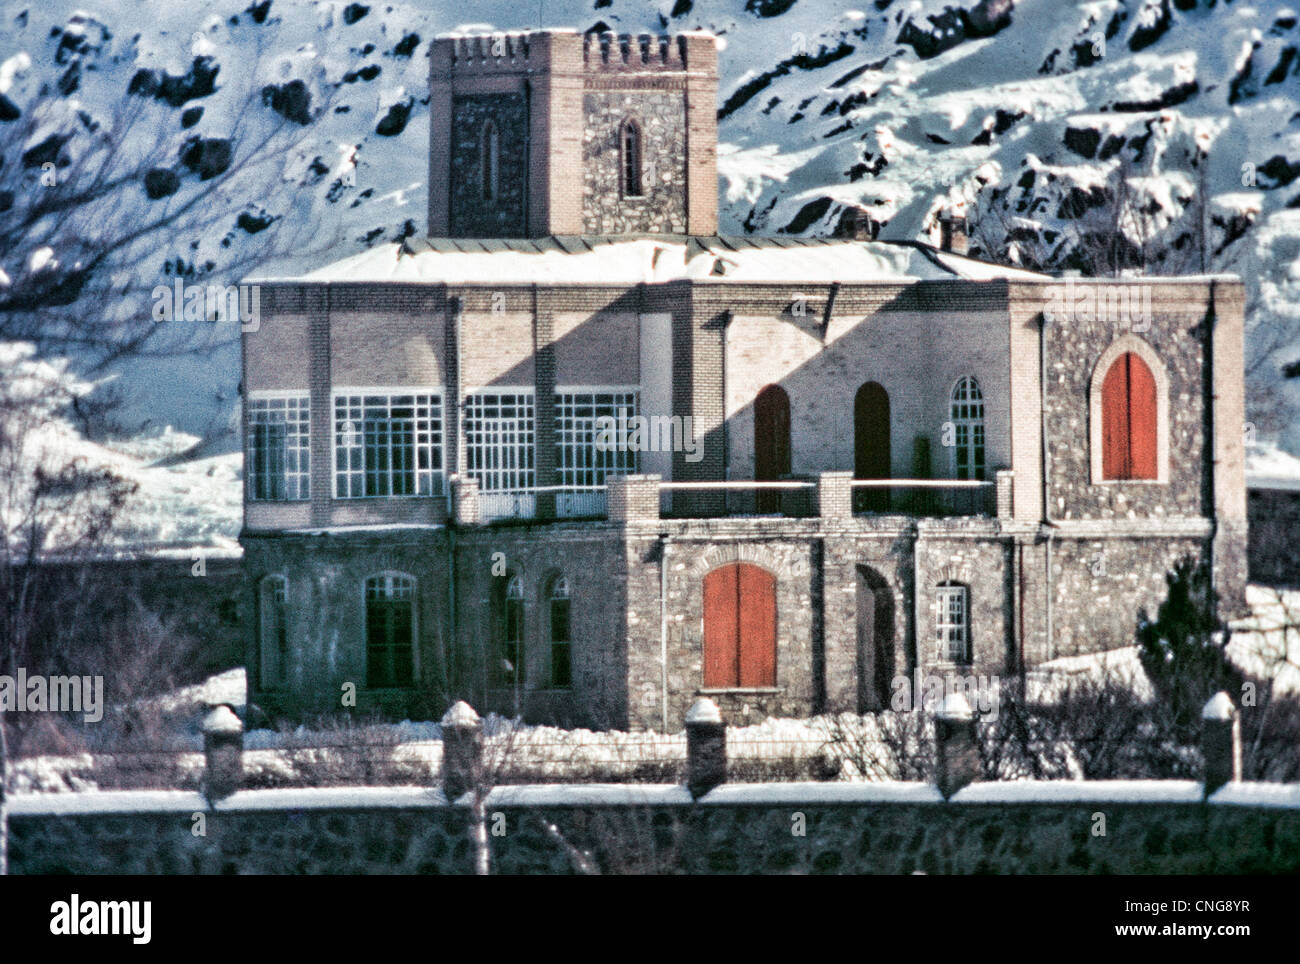 IRAN, ARAK: Anwesen am Stadtrand von Arak, Iran, war ein Privathaus, verwandelte sich in einen Park und dann eine muslimische Institut. Archivierung Stockfoto